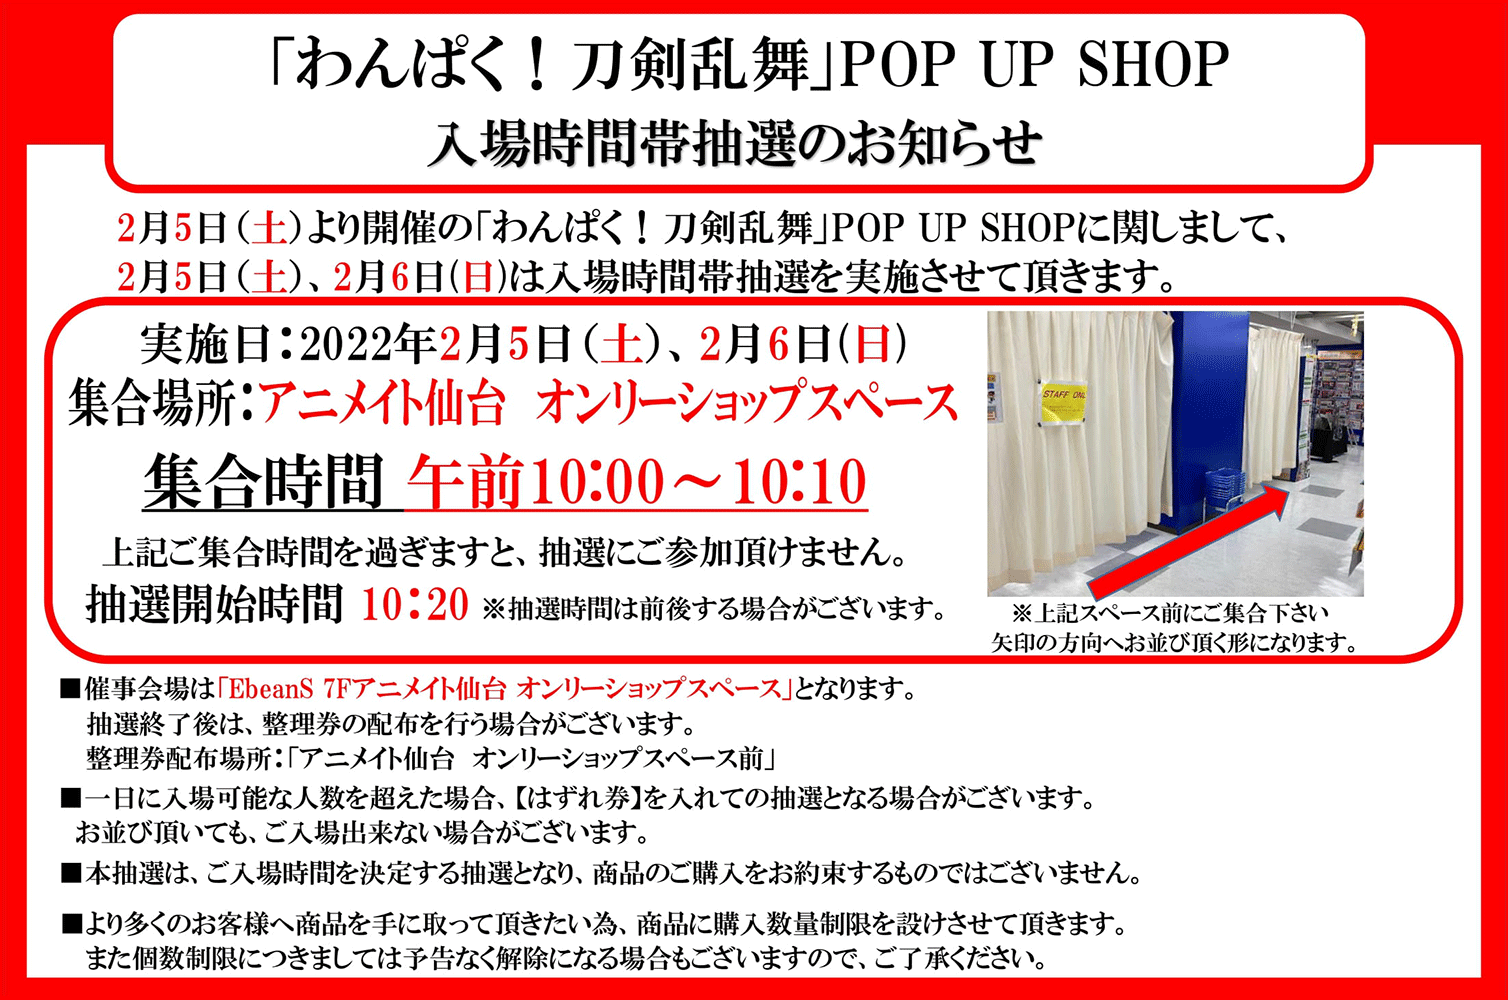 わんぱく 刀剣乱舞 第三弾 Pop Up Shop アニメイト仙台 開催